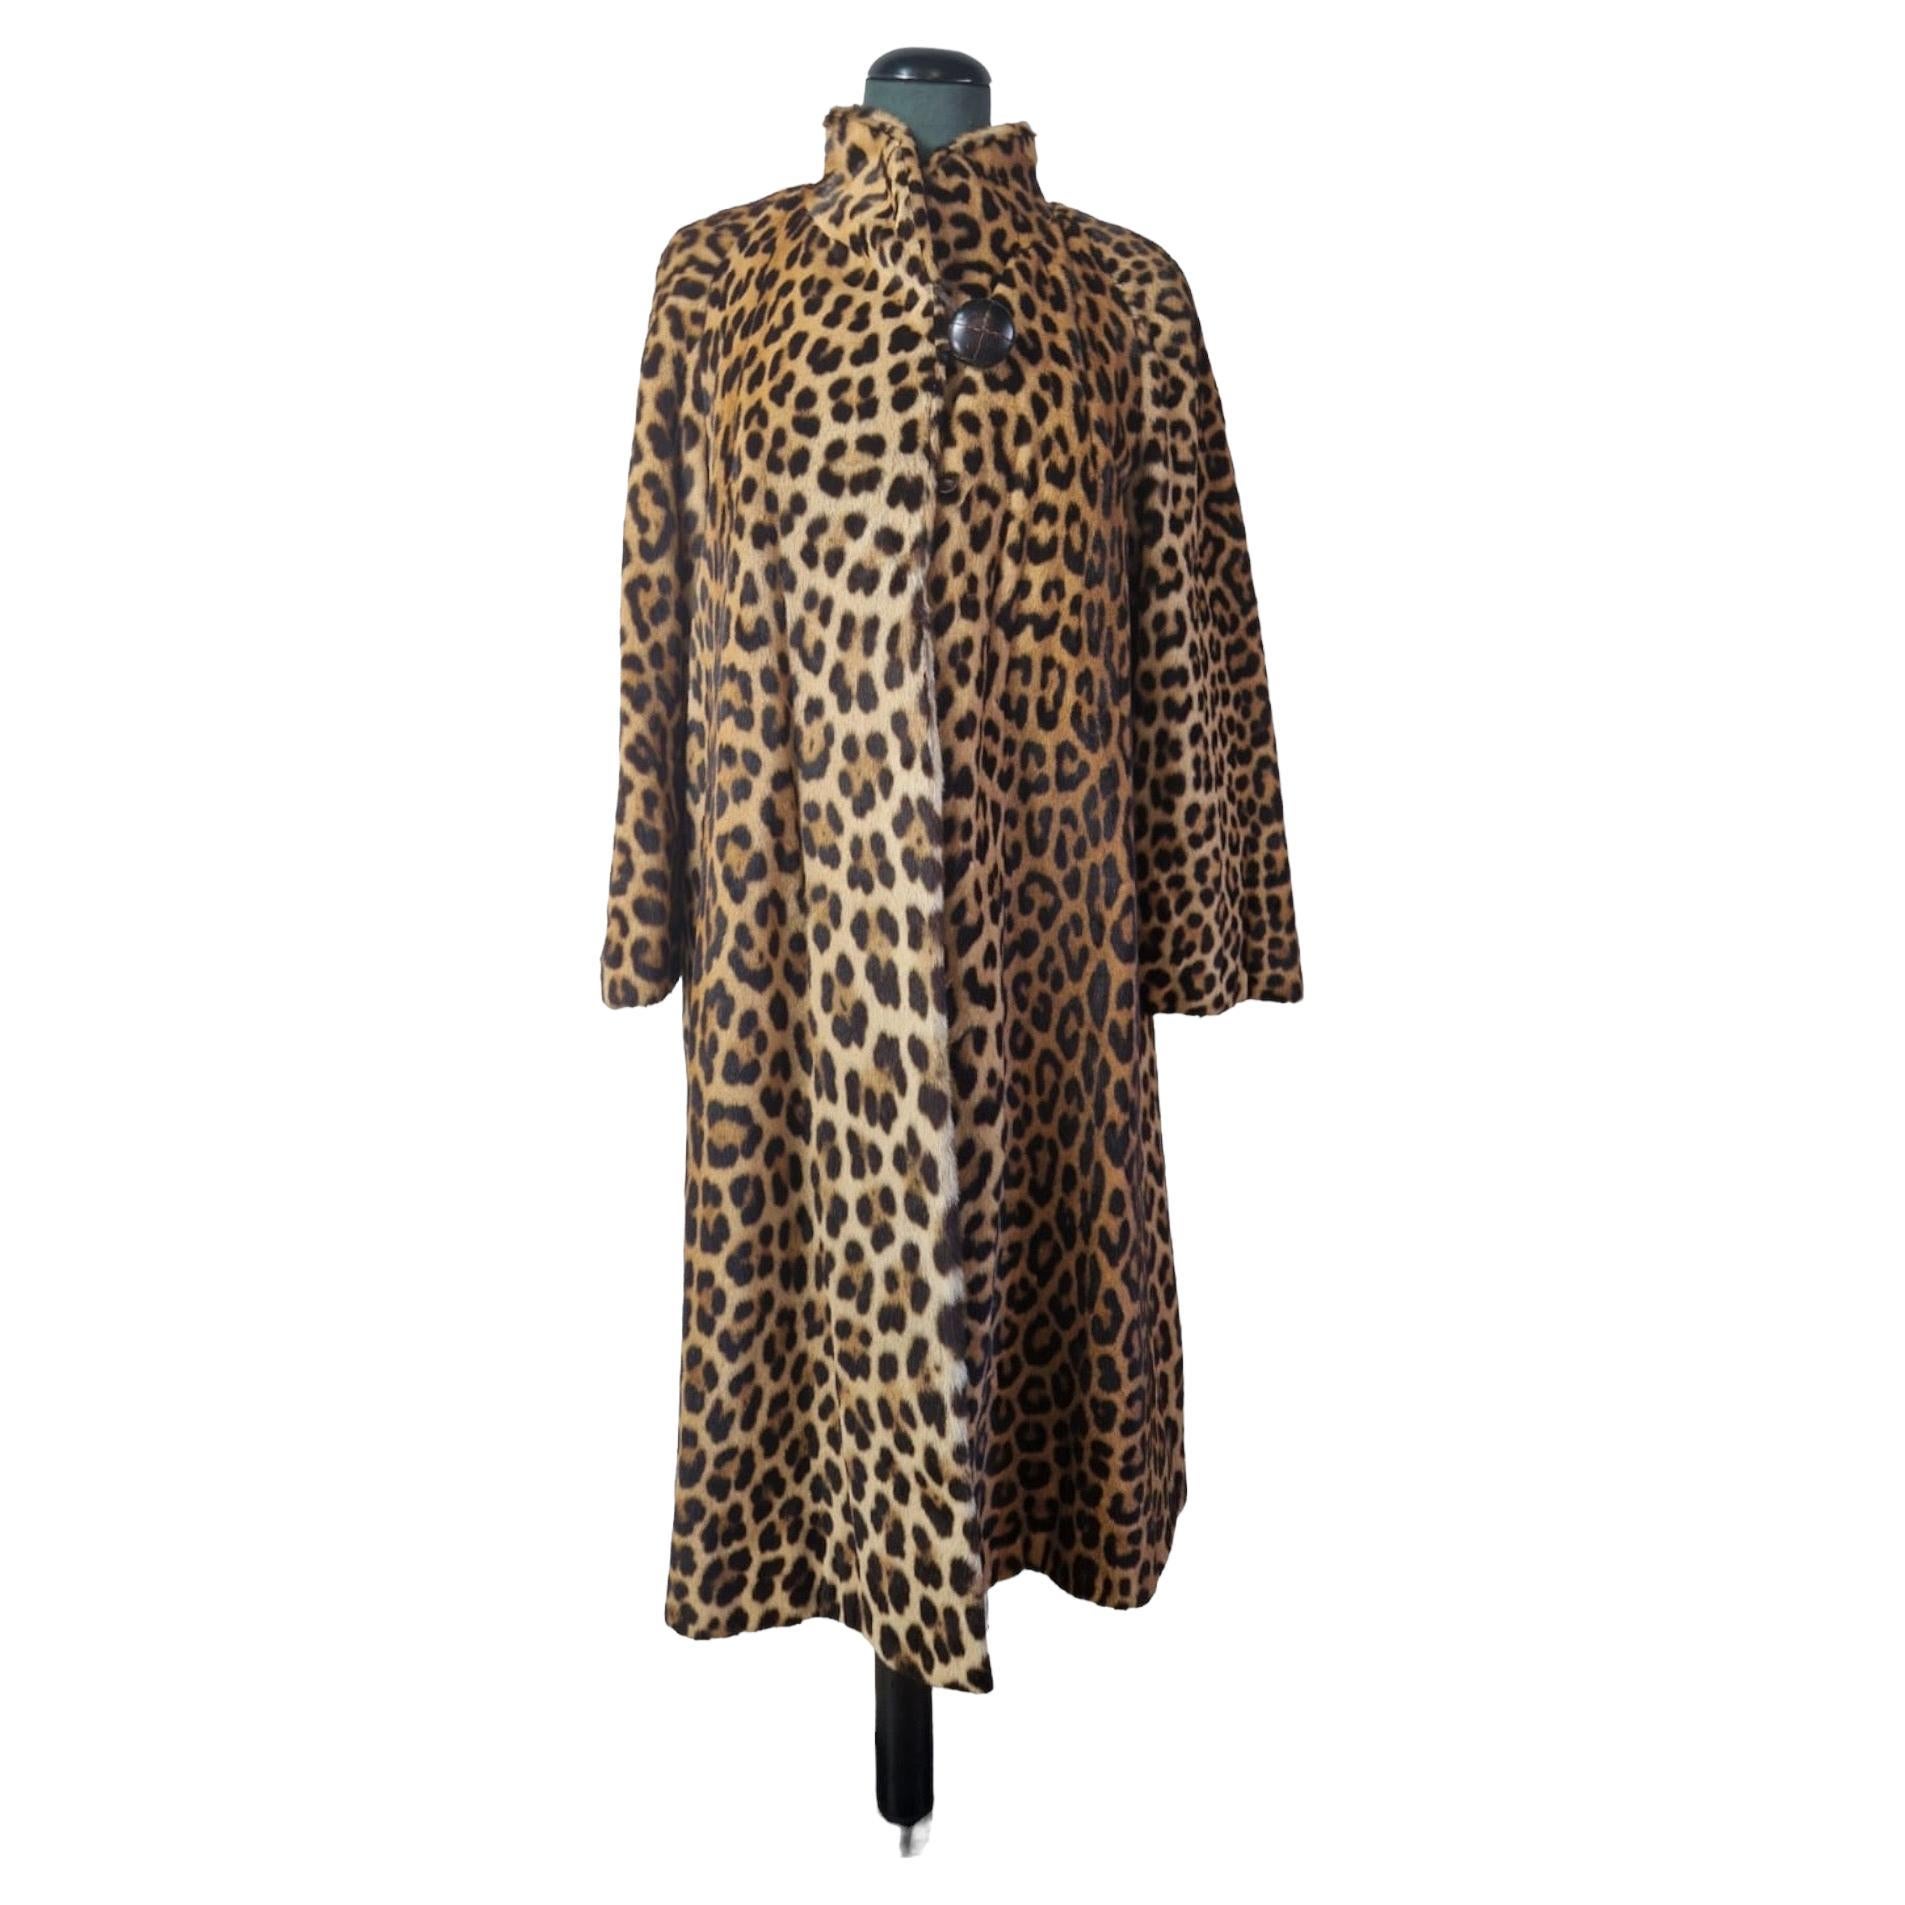 Vintage leopard fur.